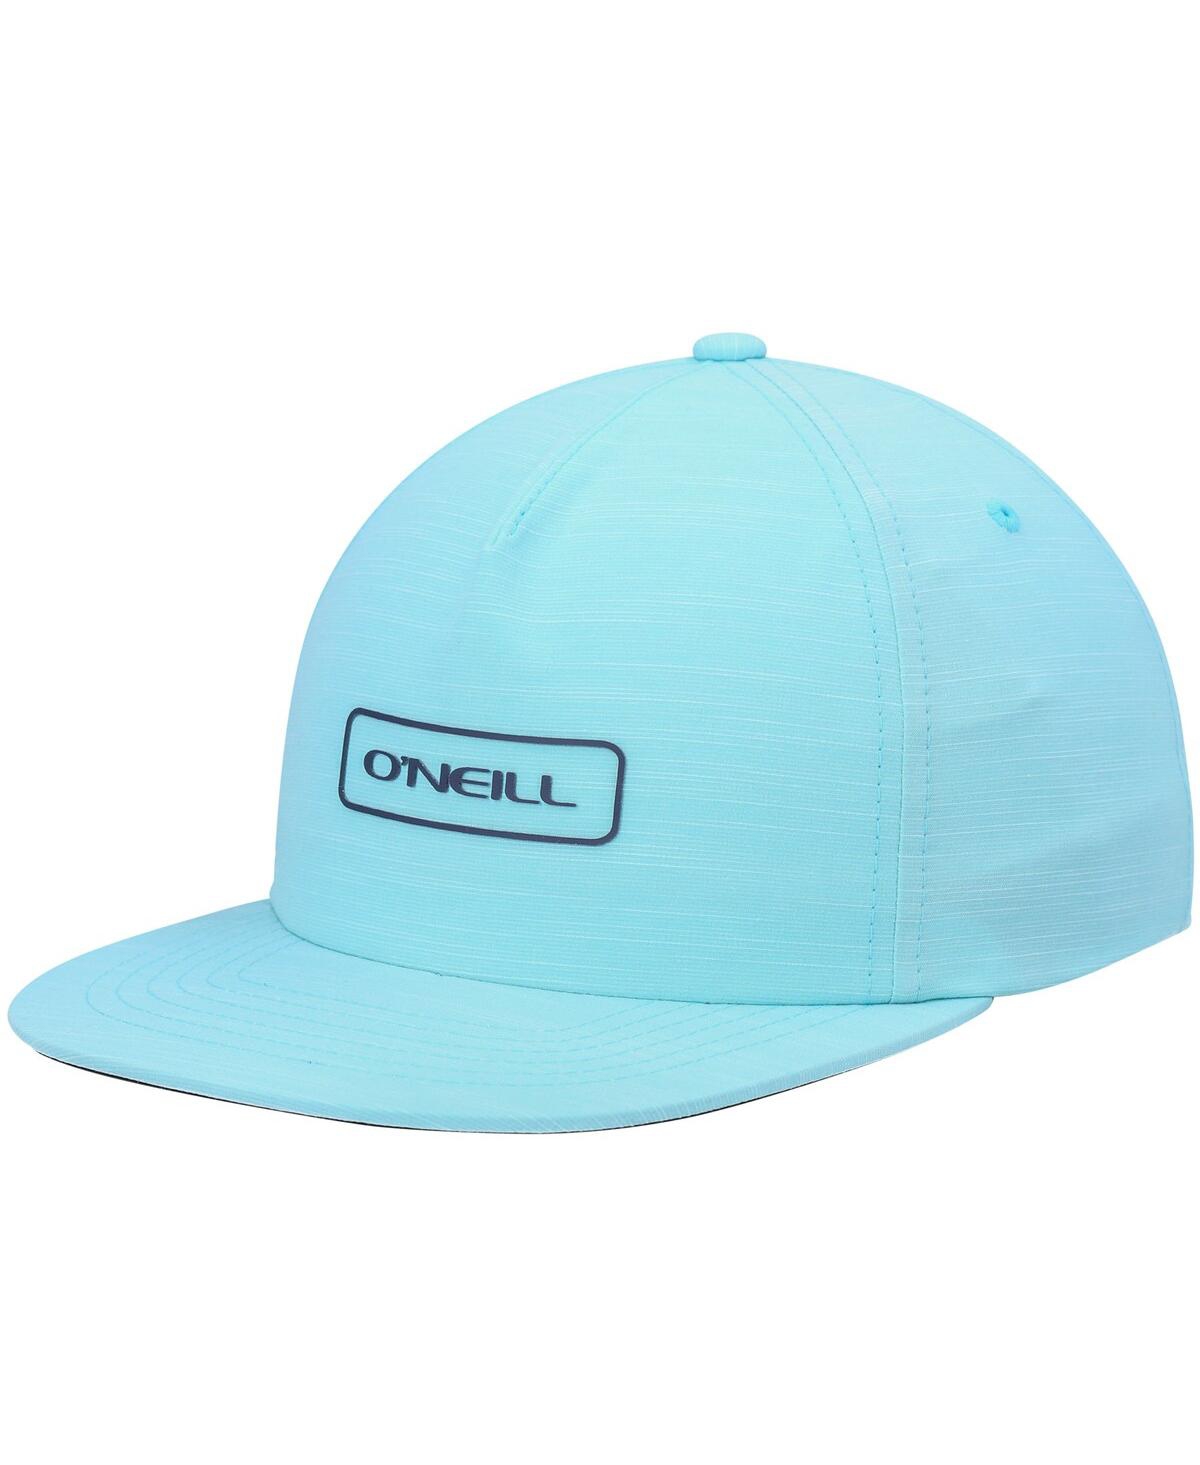 O'neill Men's  Aqua Solid Hybrid Snapback Hat